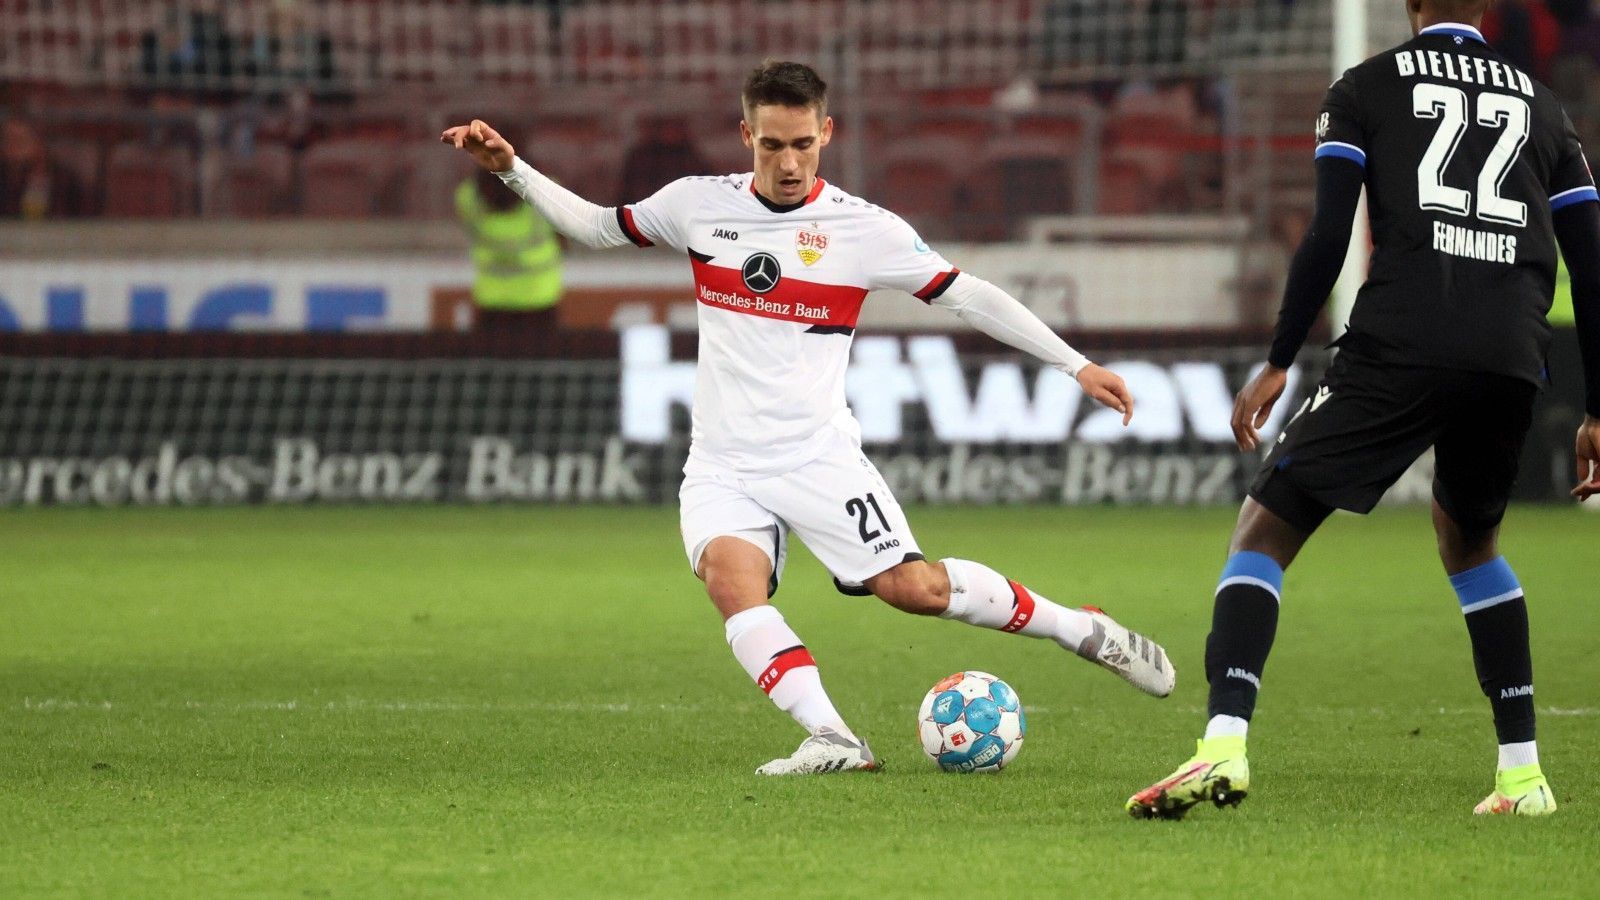 
                <strong>Platz 3: Philipp Klement</strong><br>
                &#x2022; Verein: VfB Stuttgart / inzwischen verliehen an den SC Paderborn<br>&#x2022; Absolvierte Einsätze: 6<br>&#x2022; Geschwindigkeit: 29,73 km/h<br>
              